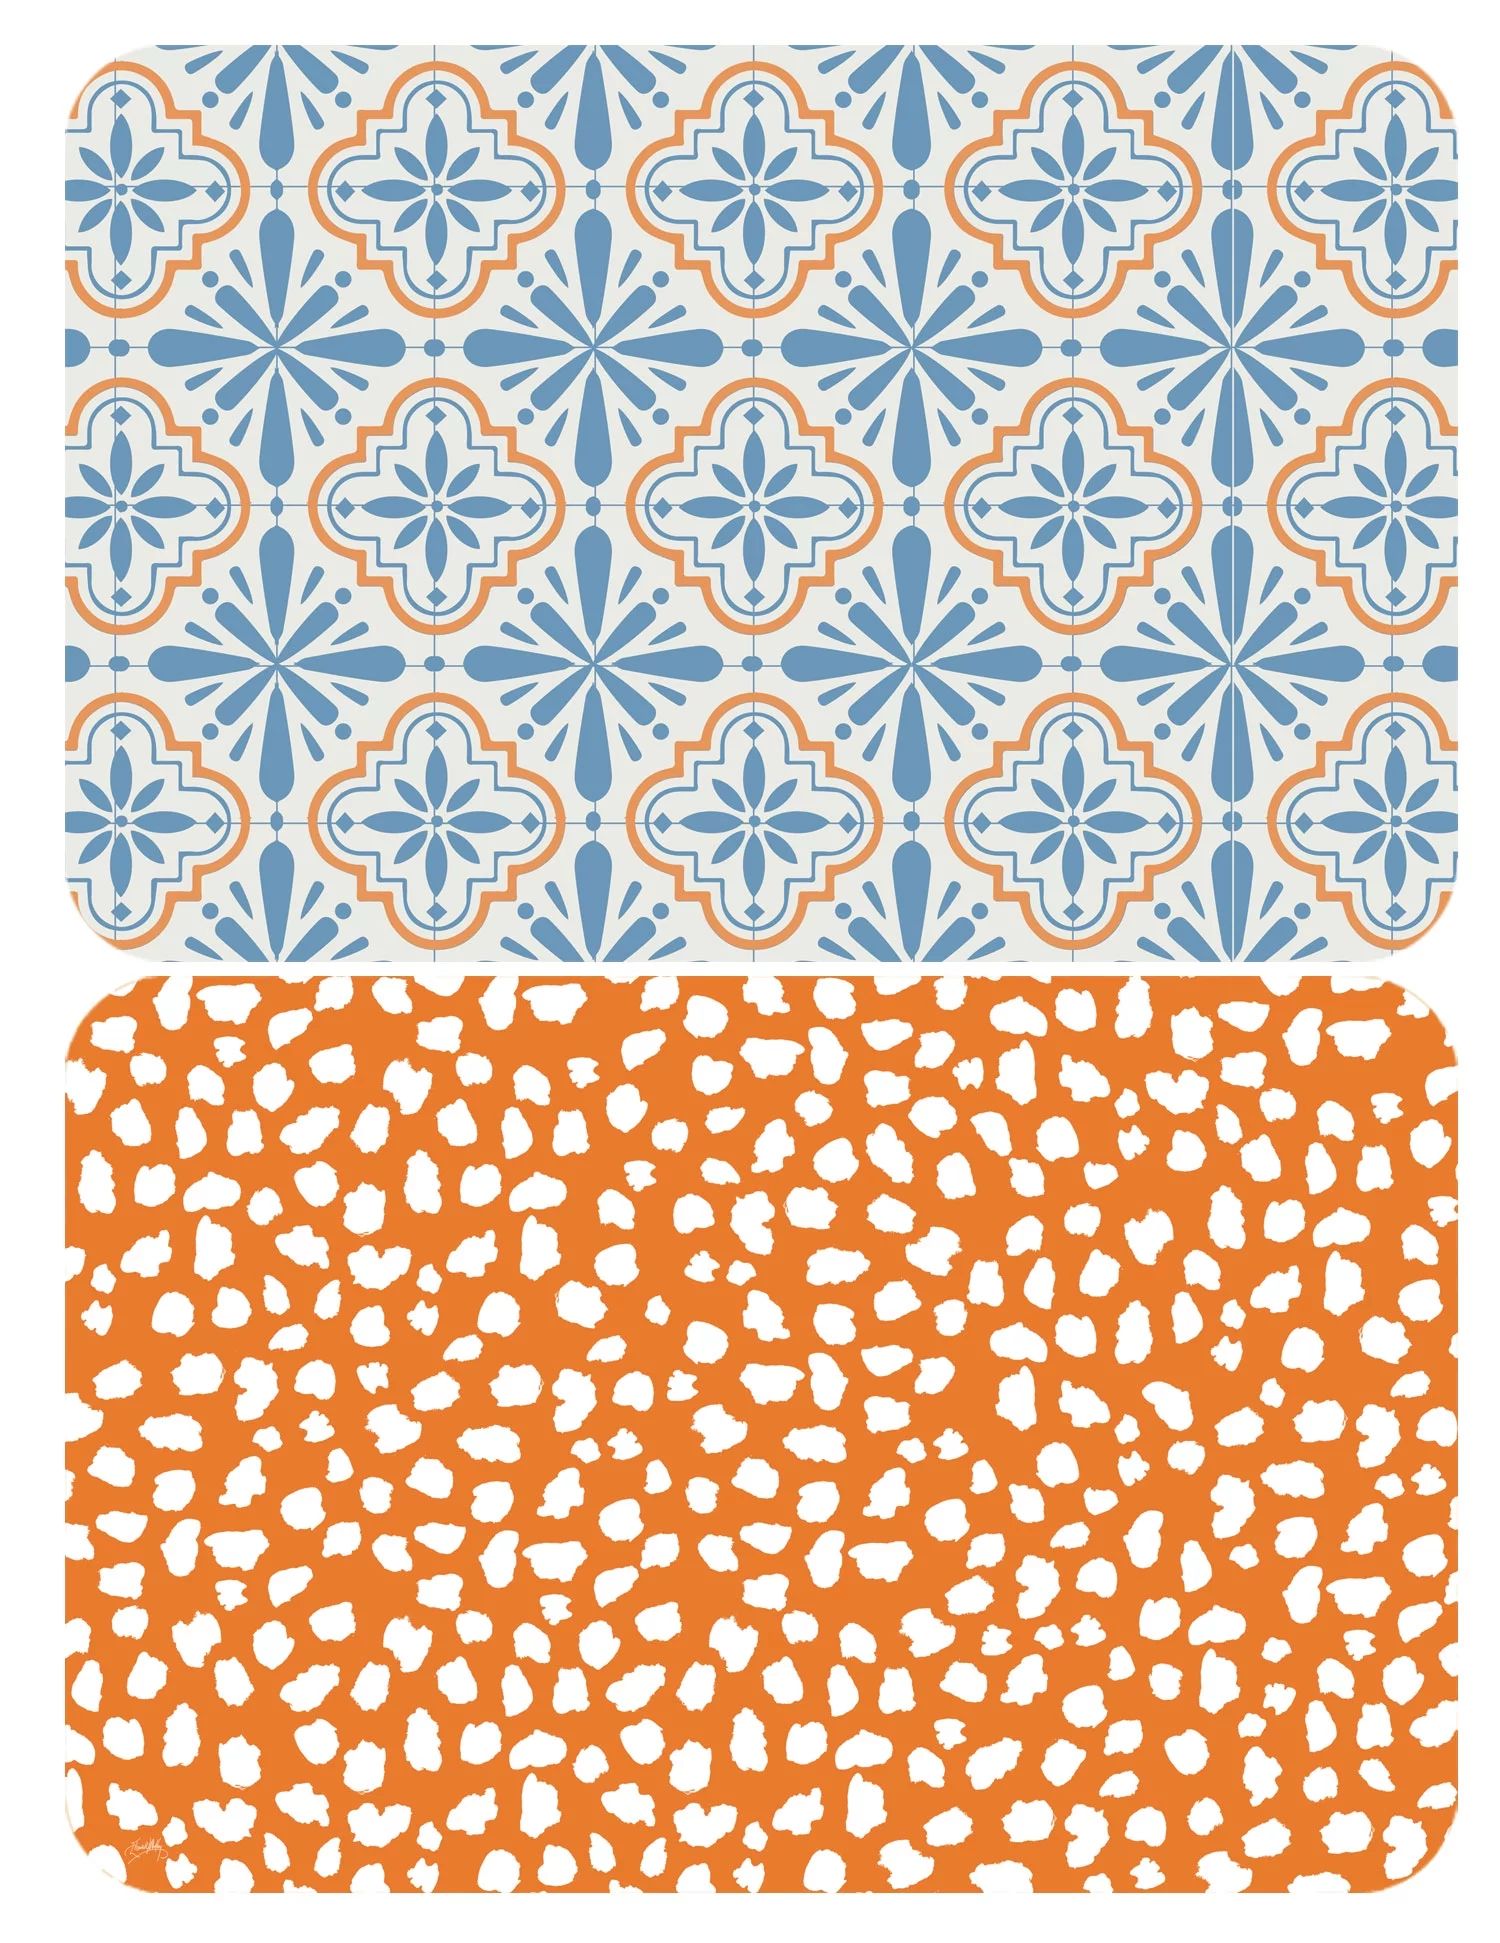 Cool Tile Pattern, Revisable Placemat, 17.13" x 11.25" | Walmart (US)